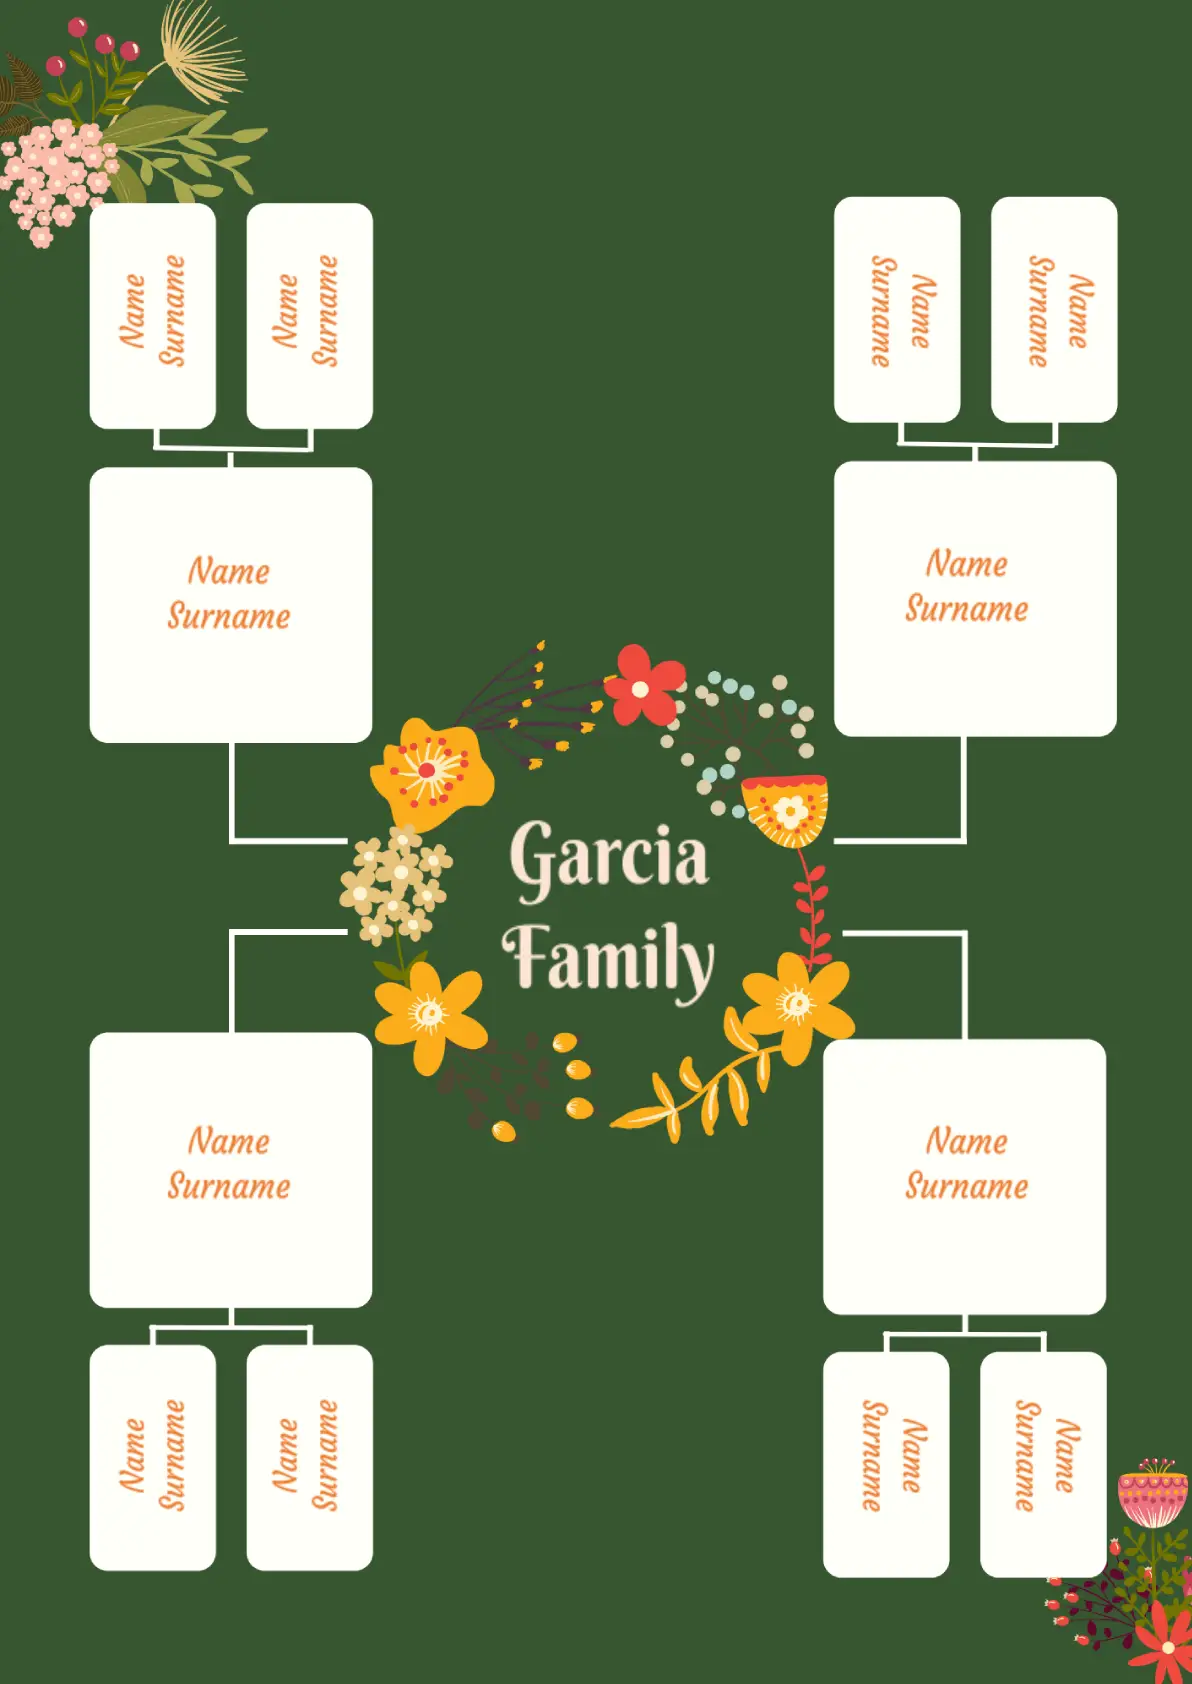 Spanish Family Tree for Google Docs